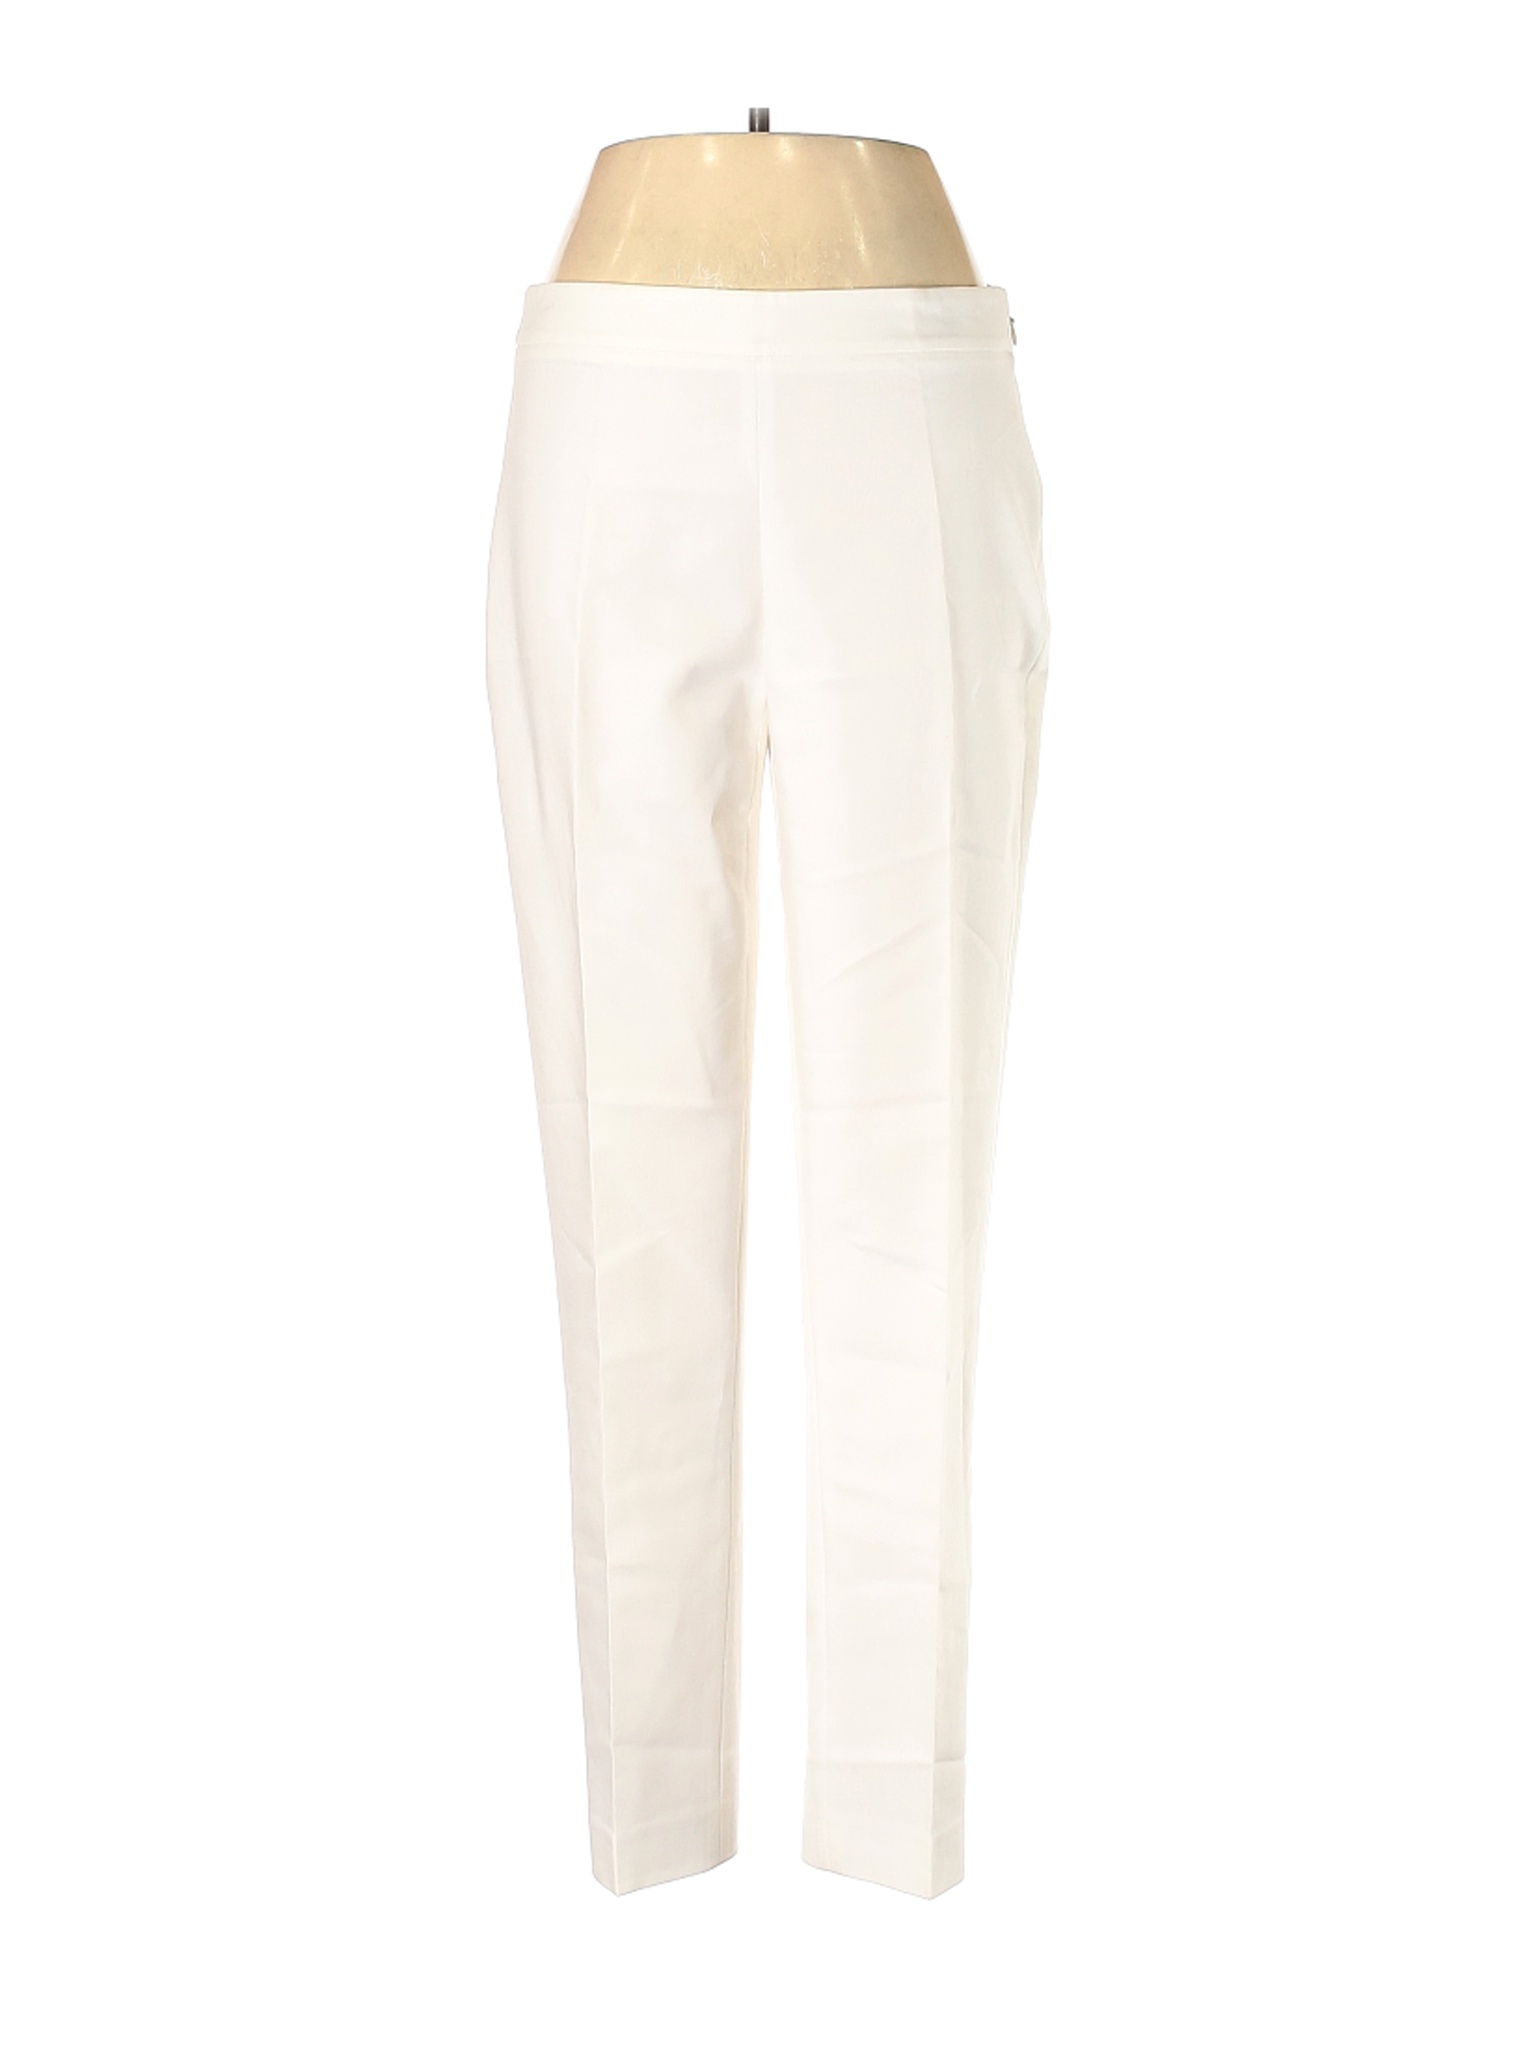 Chaus Women White Dress Pants 4 | eBay